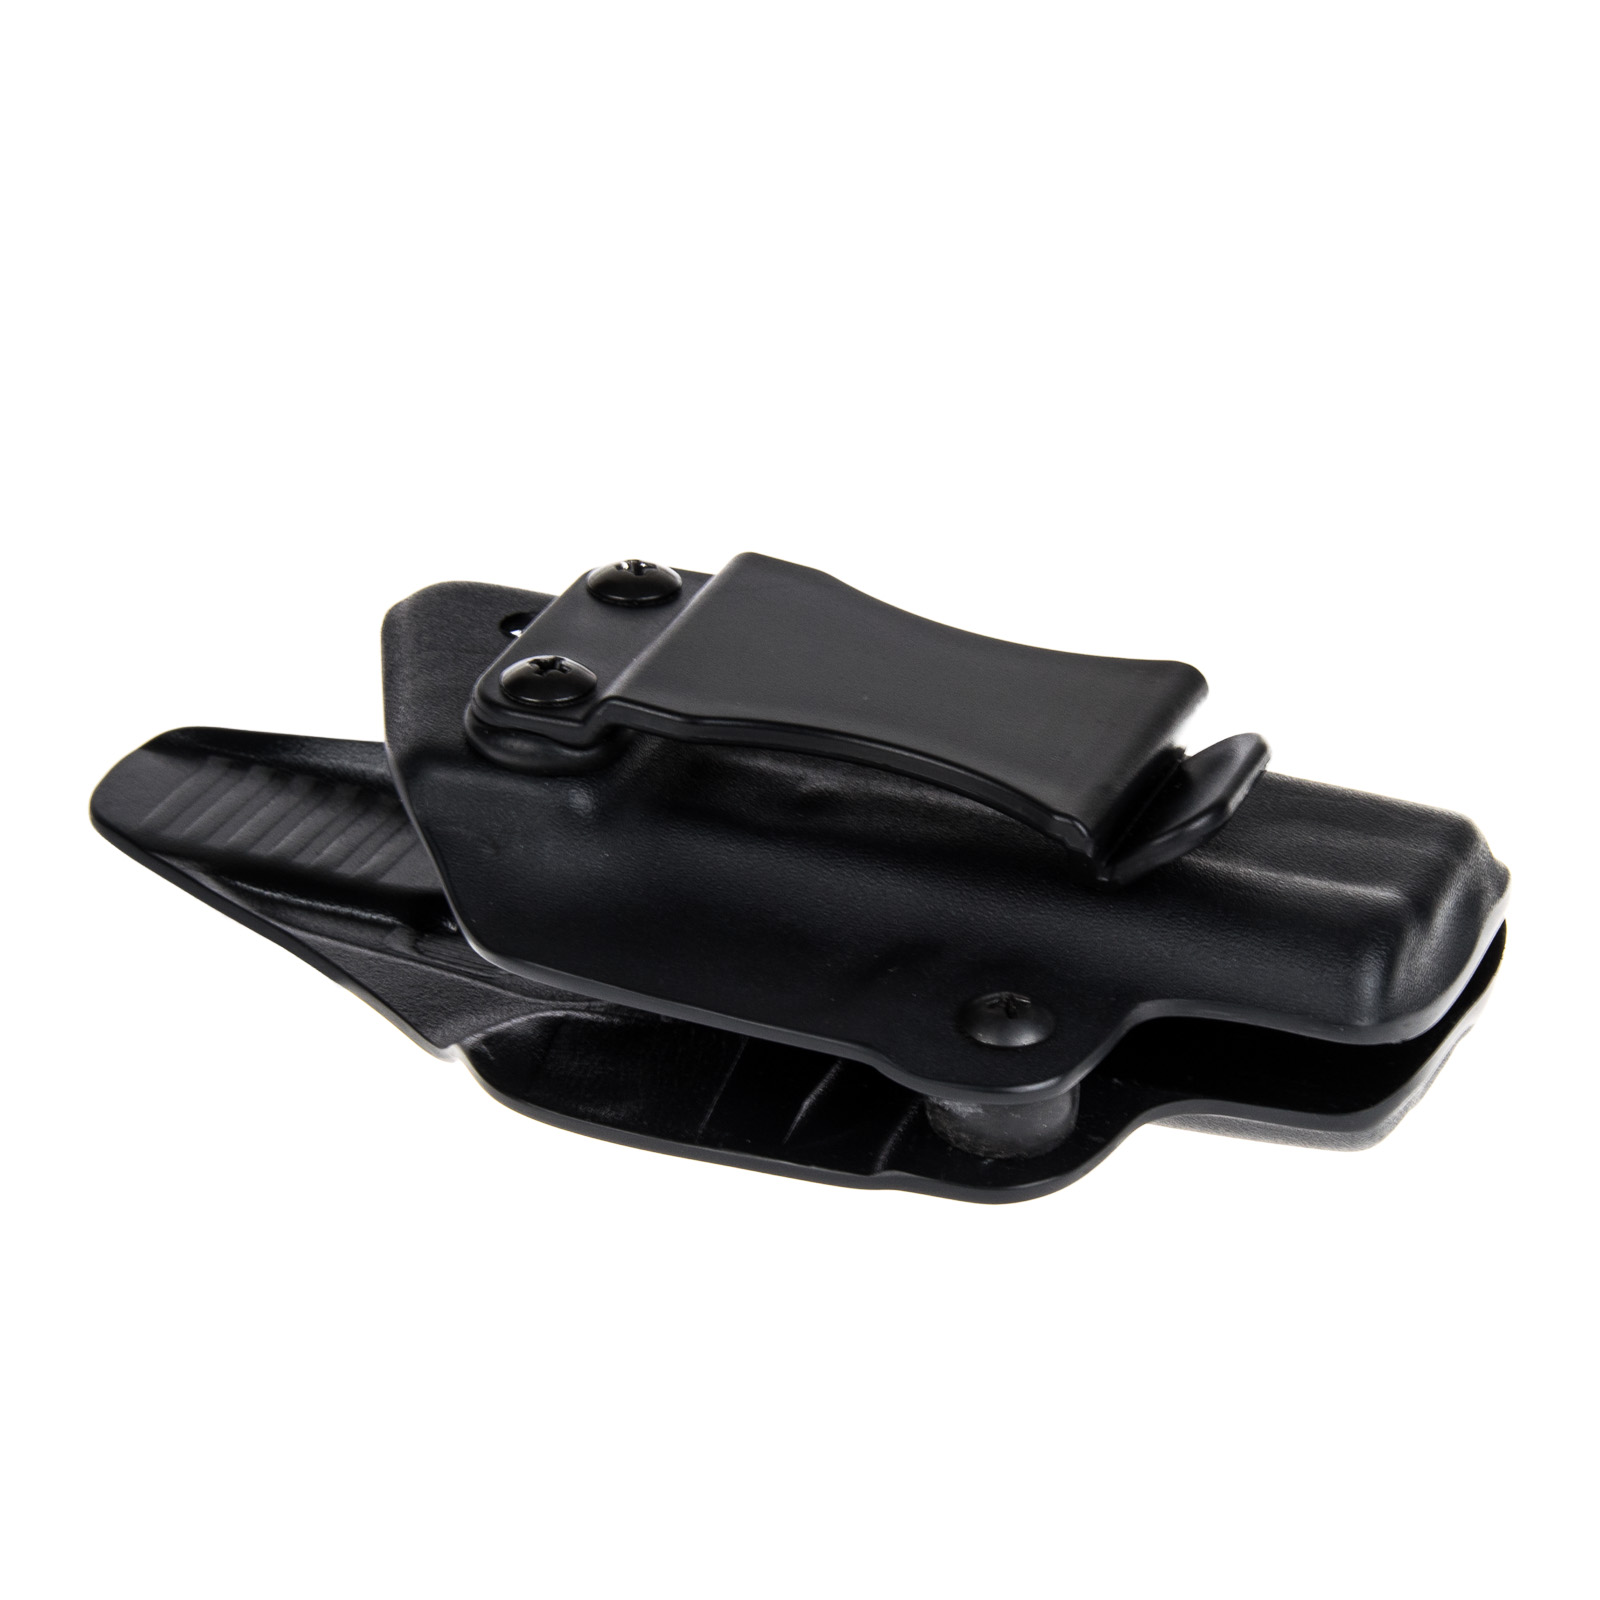 Vnitřní pouzdro RHholster, plný sweatguard, černá/černá (Glock 26/27)